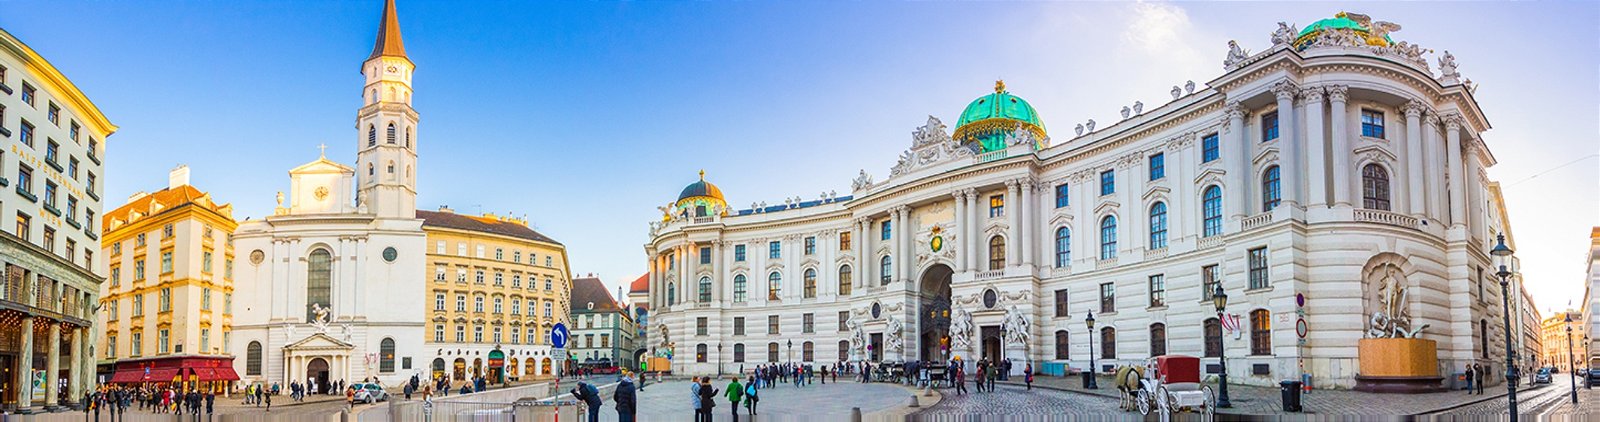 Kurzurlaub in Wien